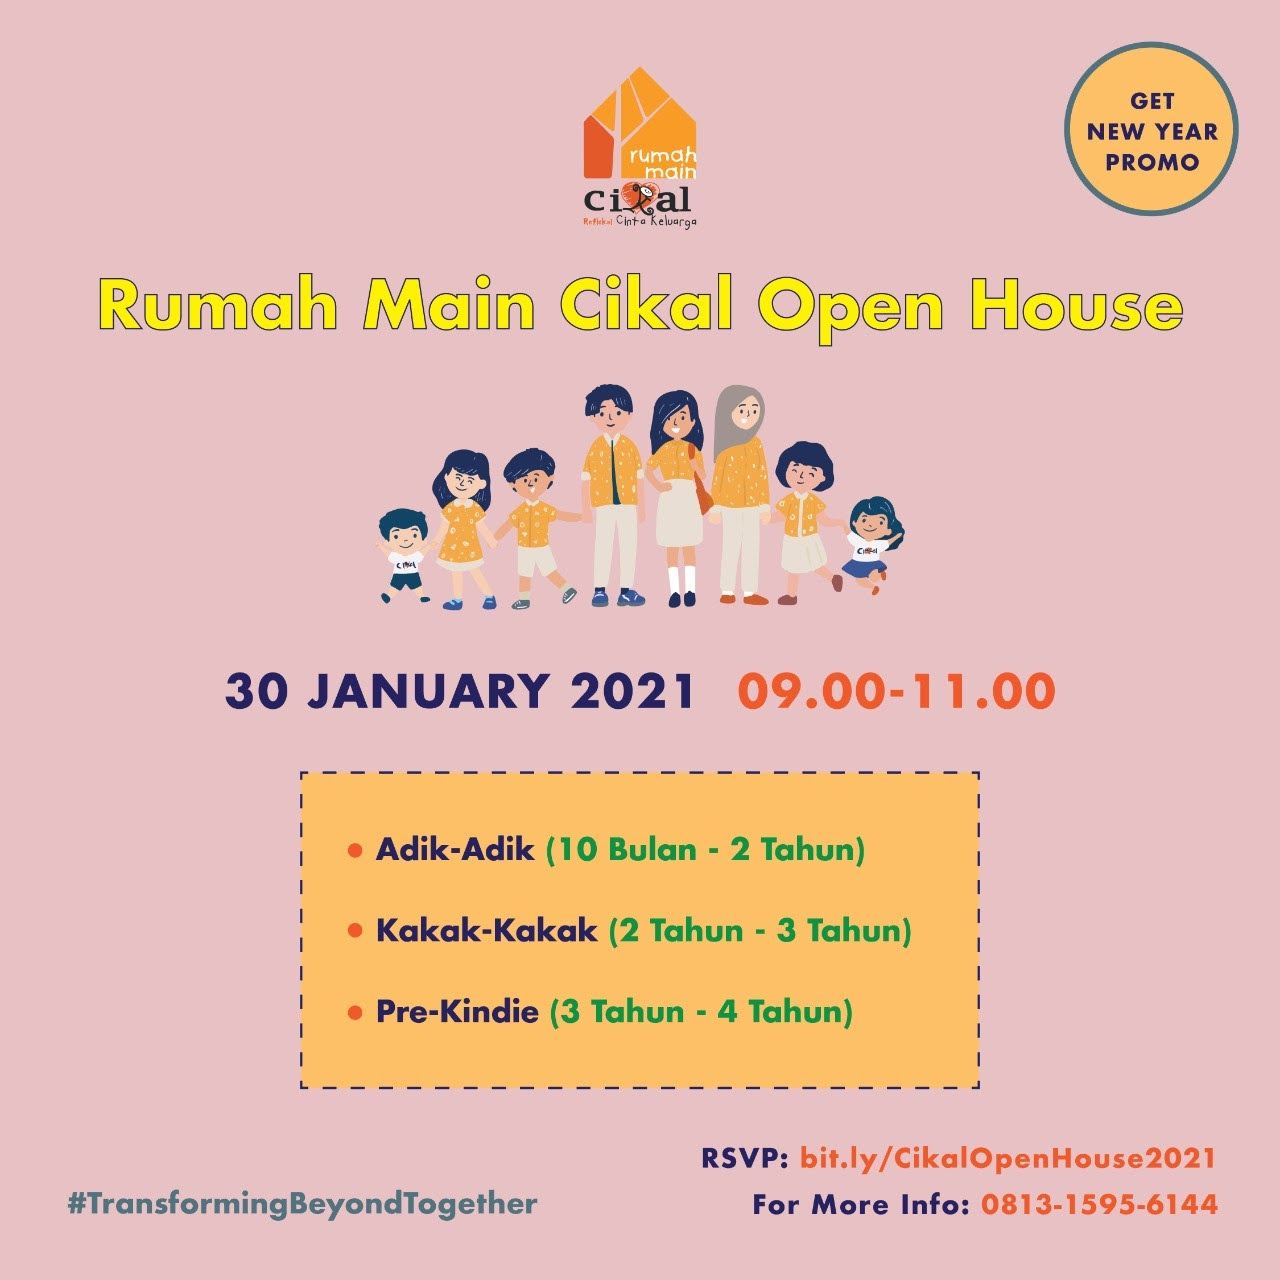 Rumah Main Cikal Virtual Open House 2021